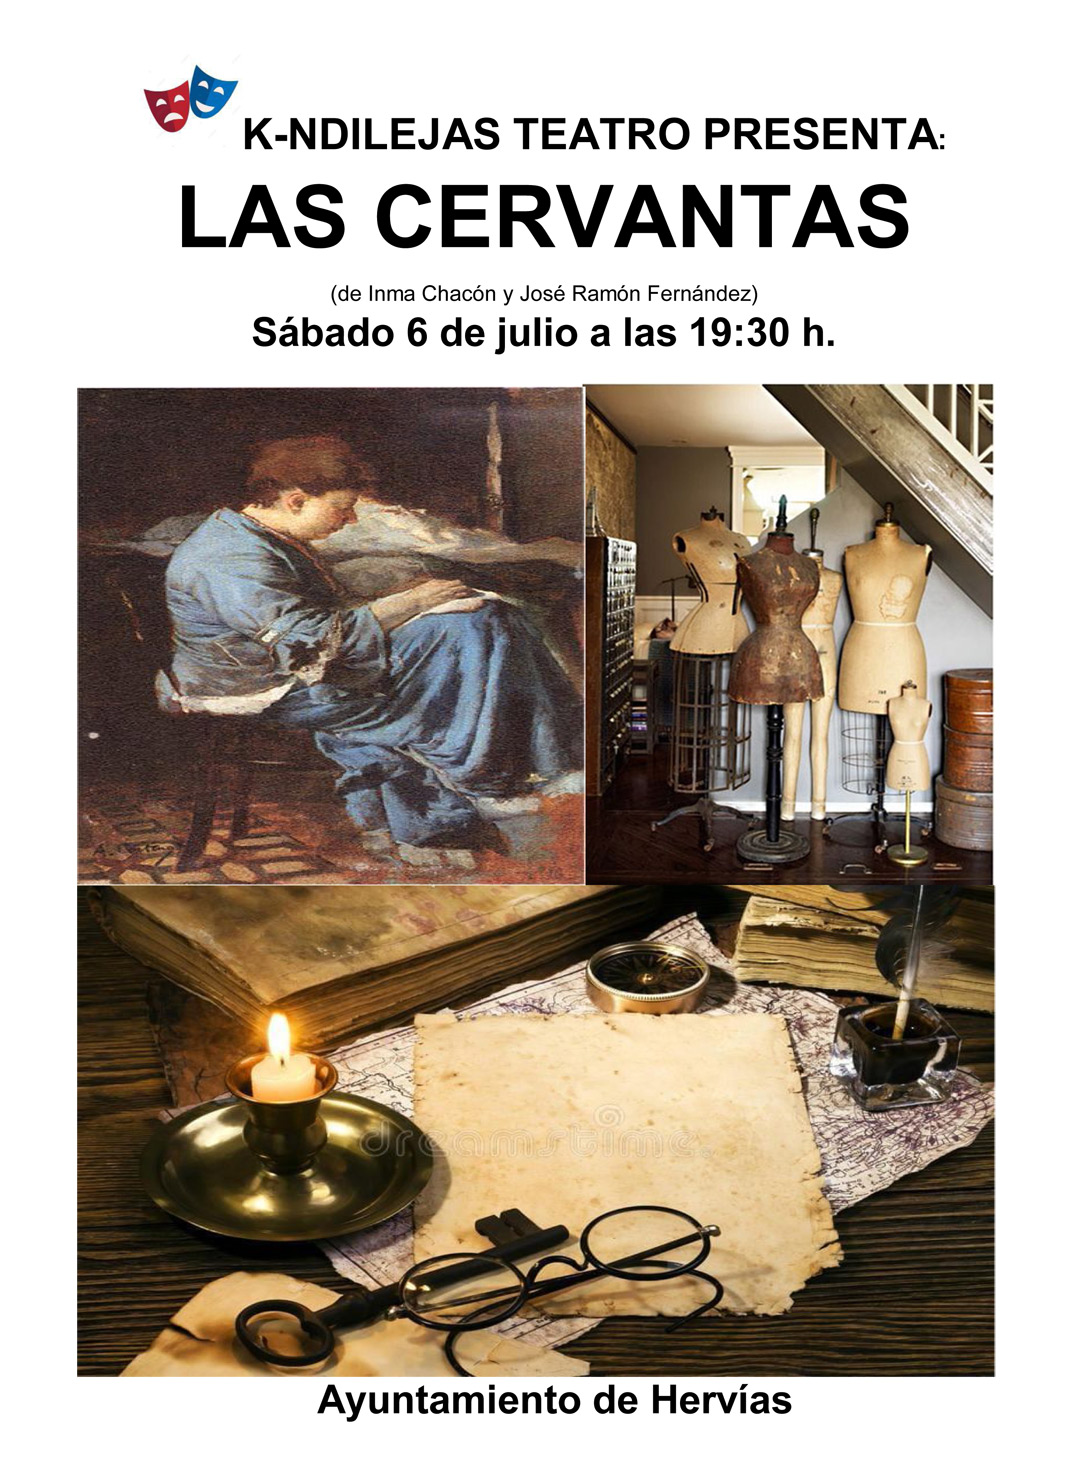 Las Cervantas - Teatro